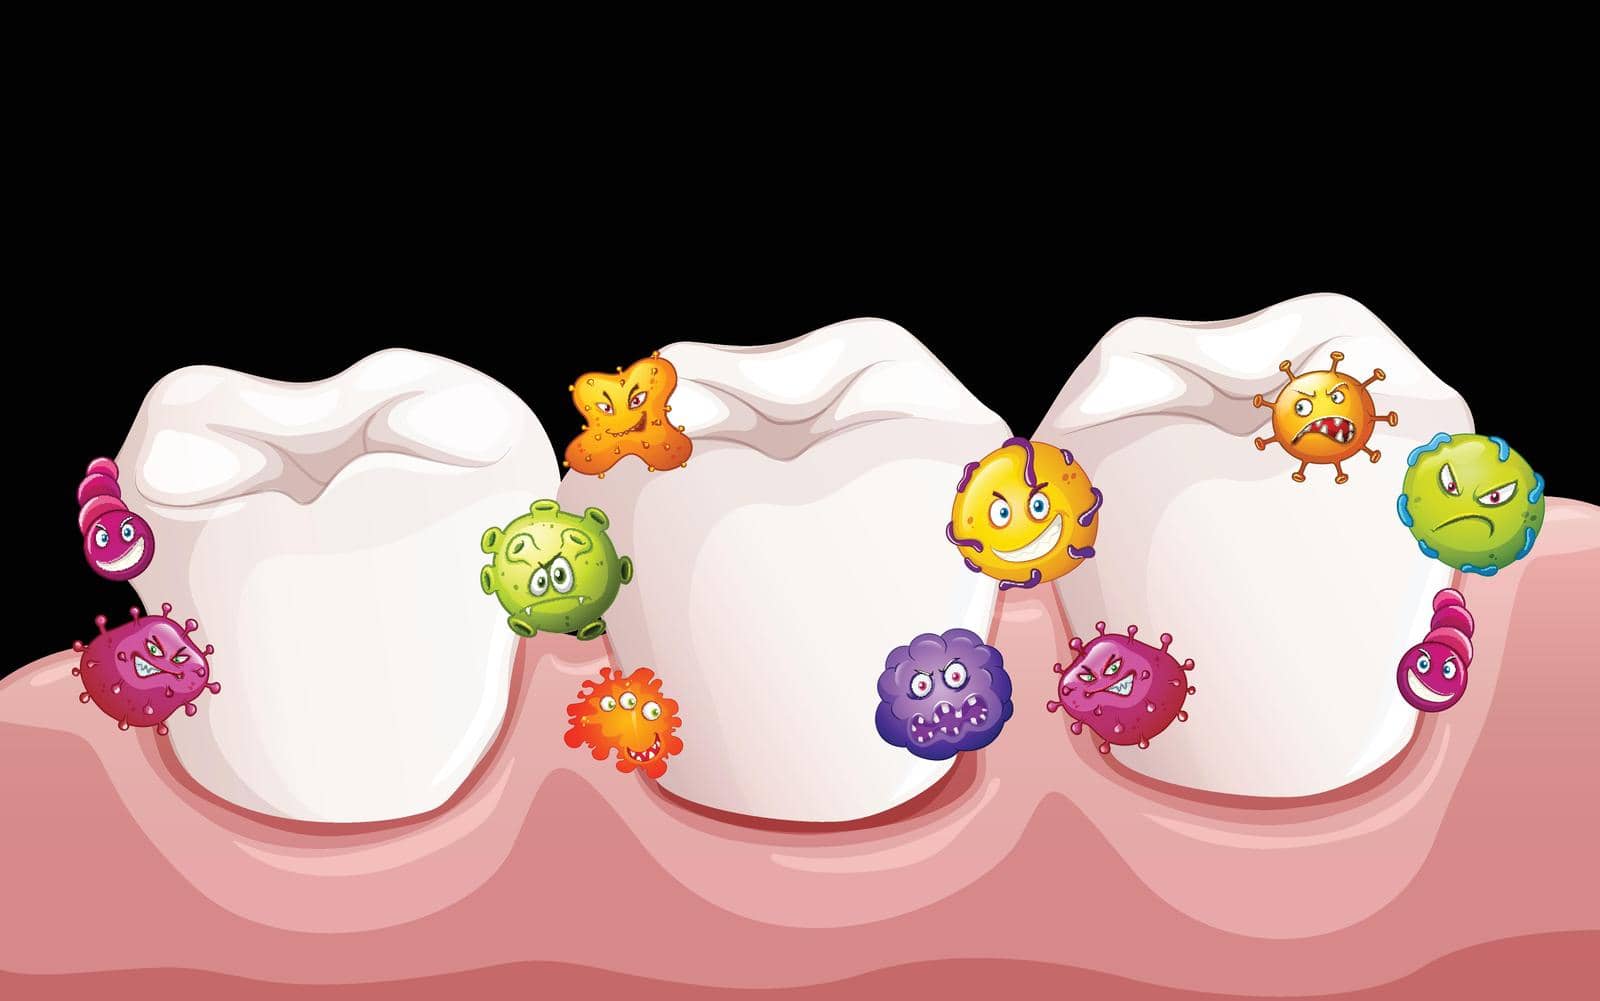 Bacteria in human teeth illustration